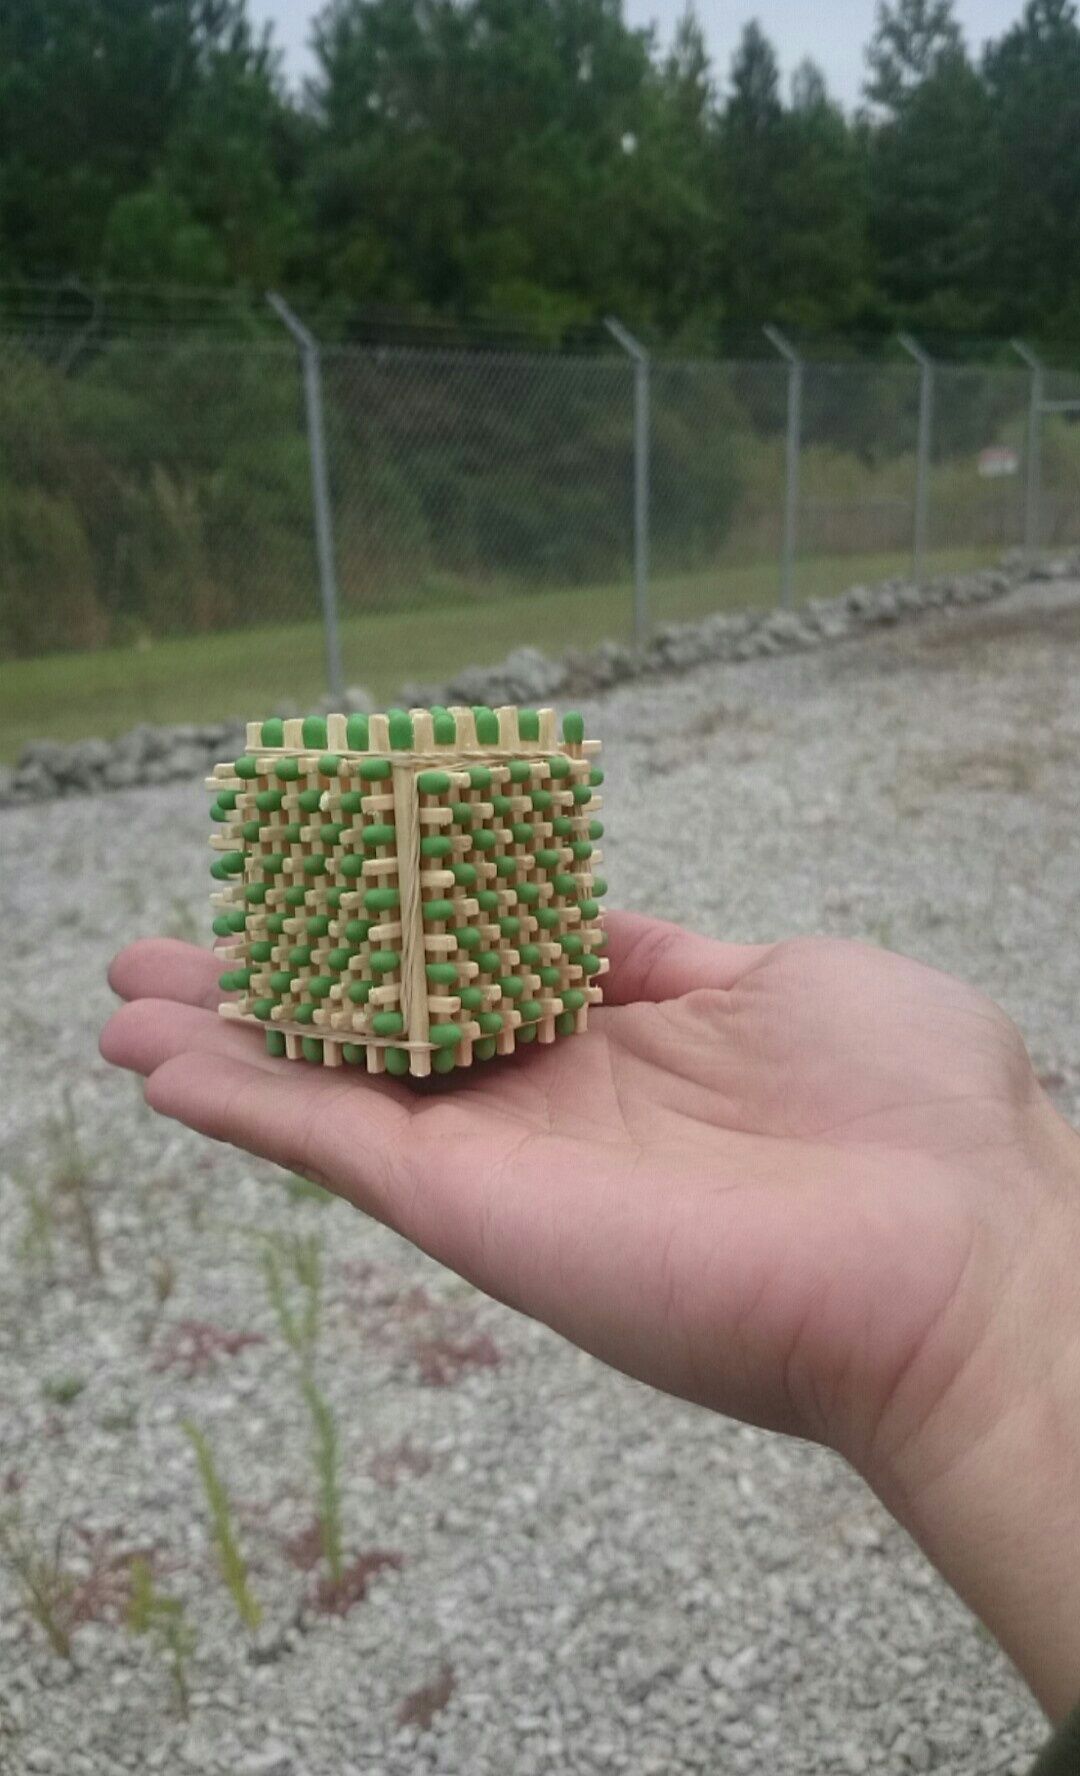 My buddy made a match cube